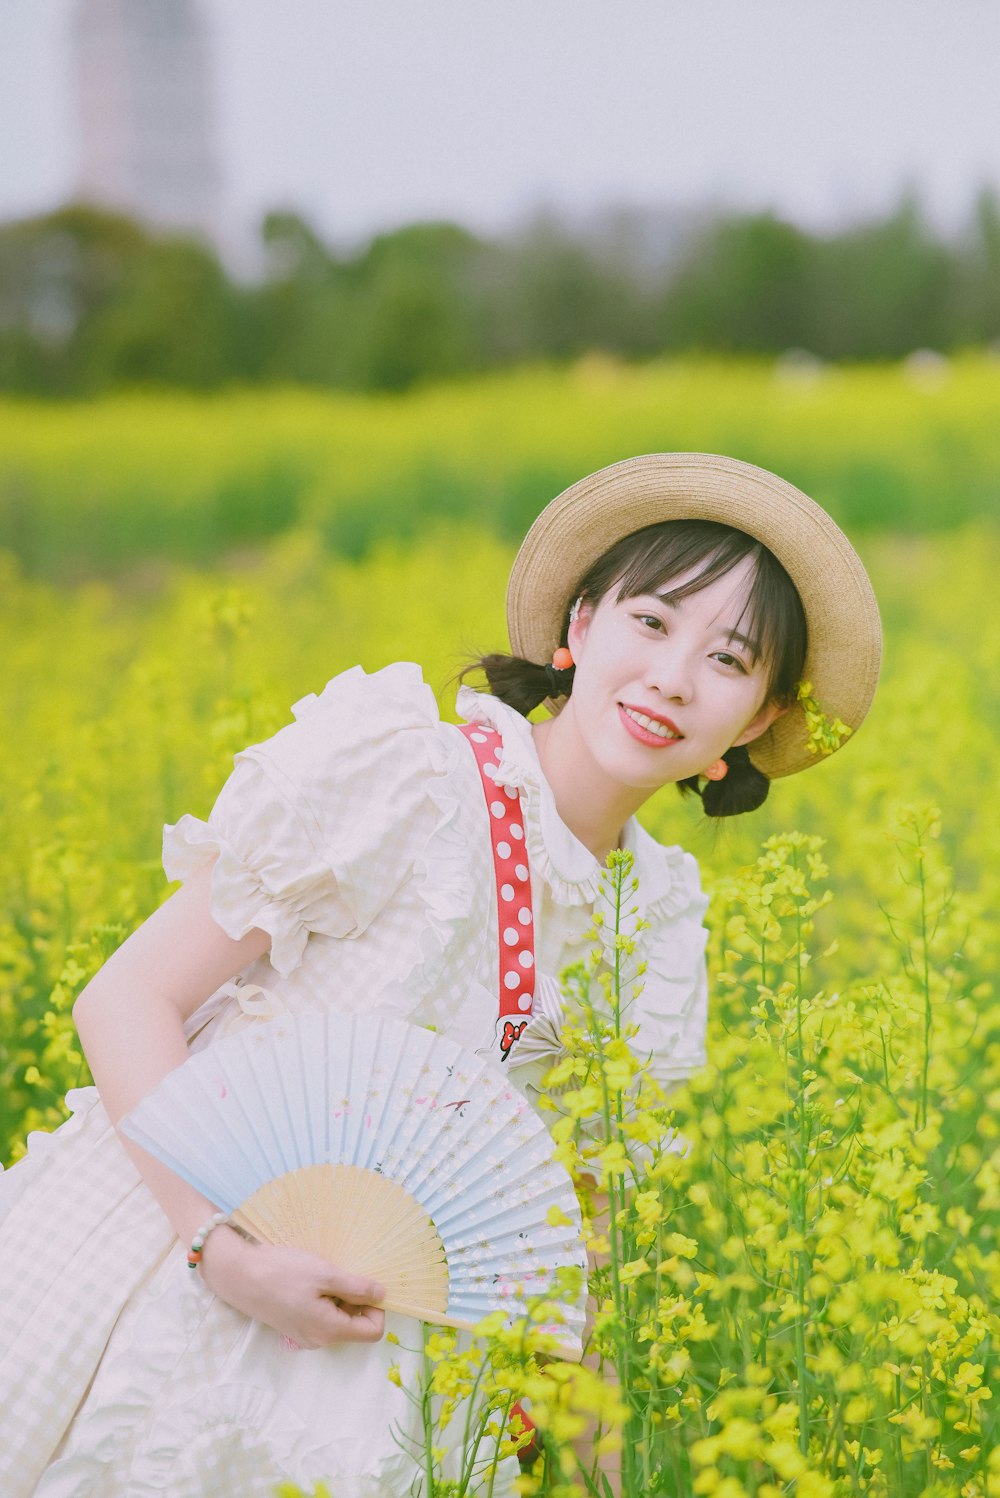 a woman in a field holding a fan